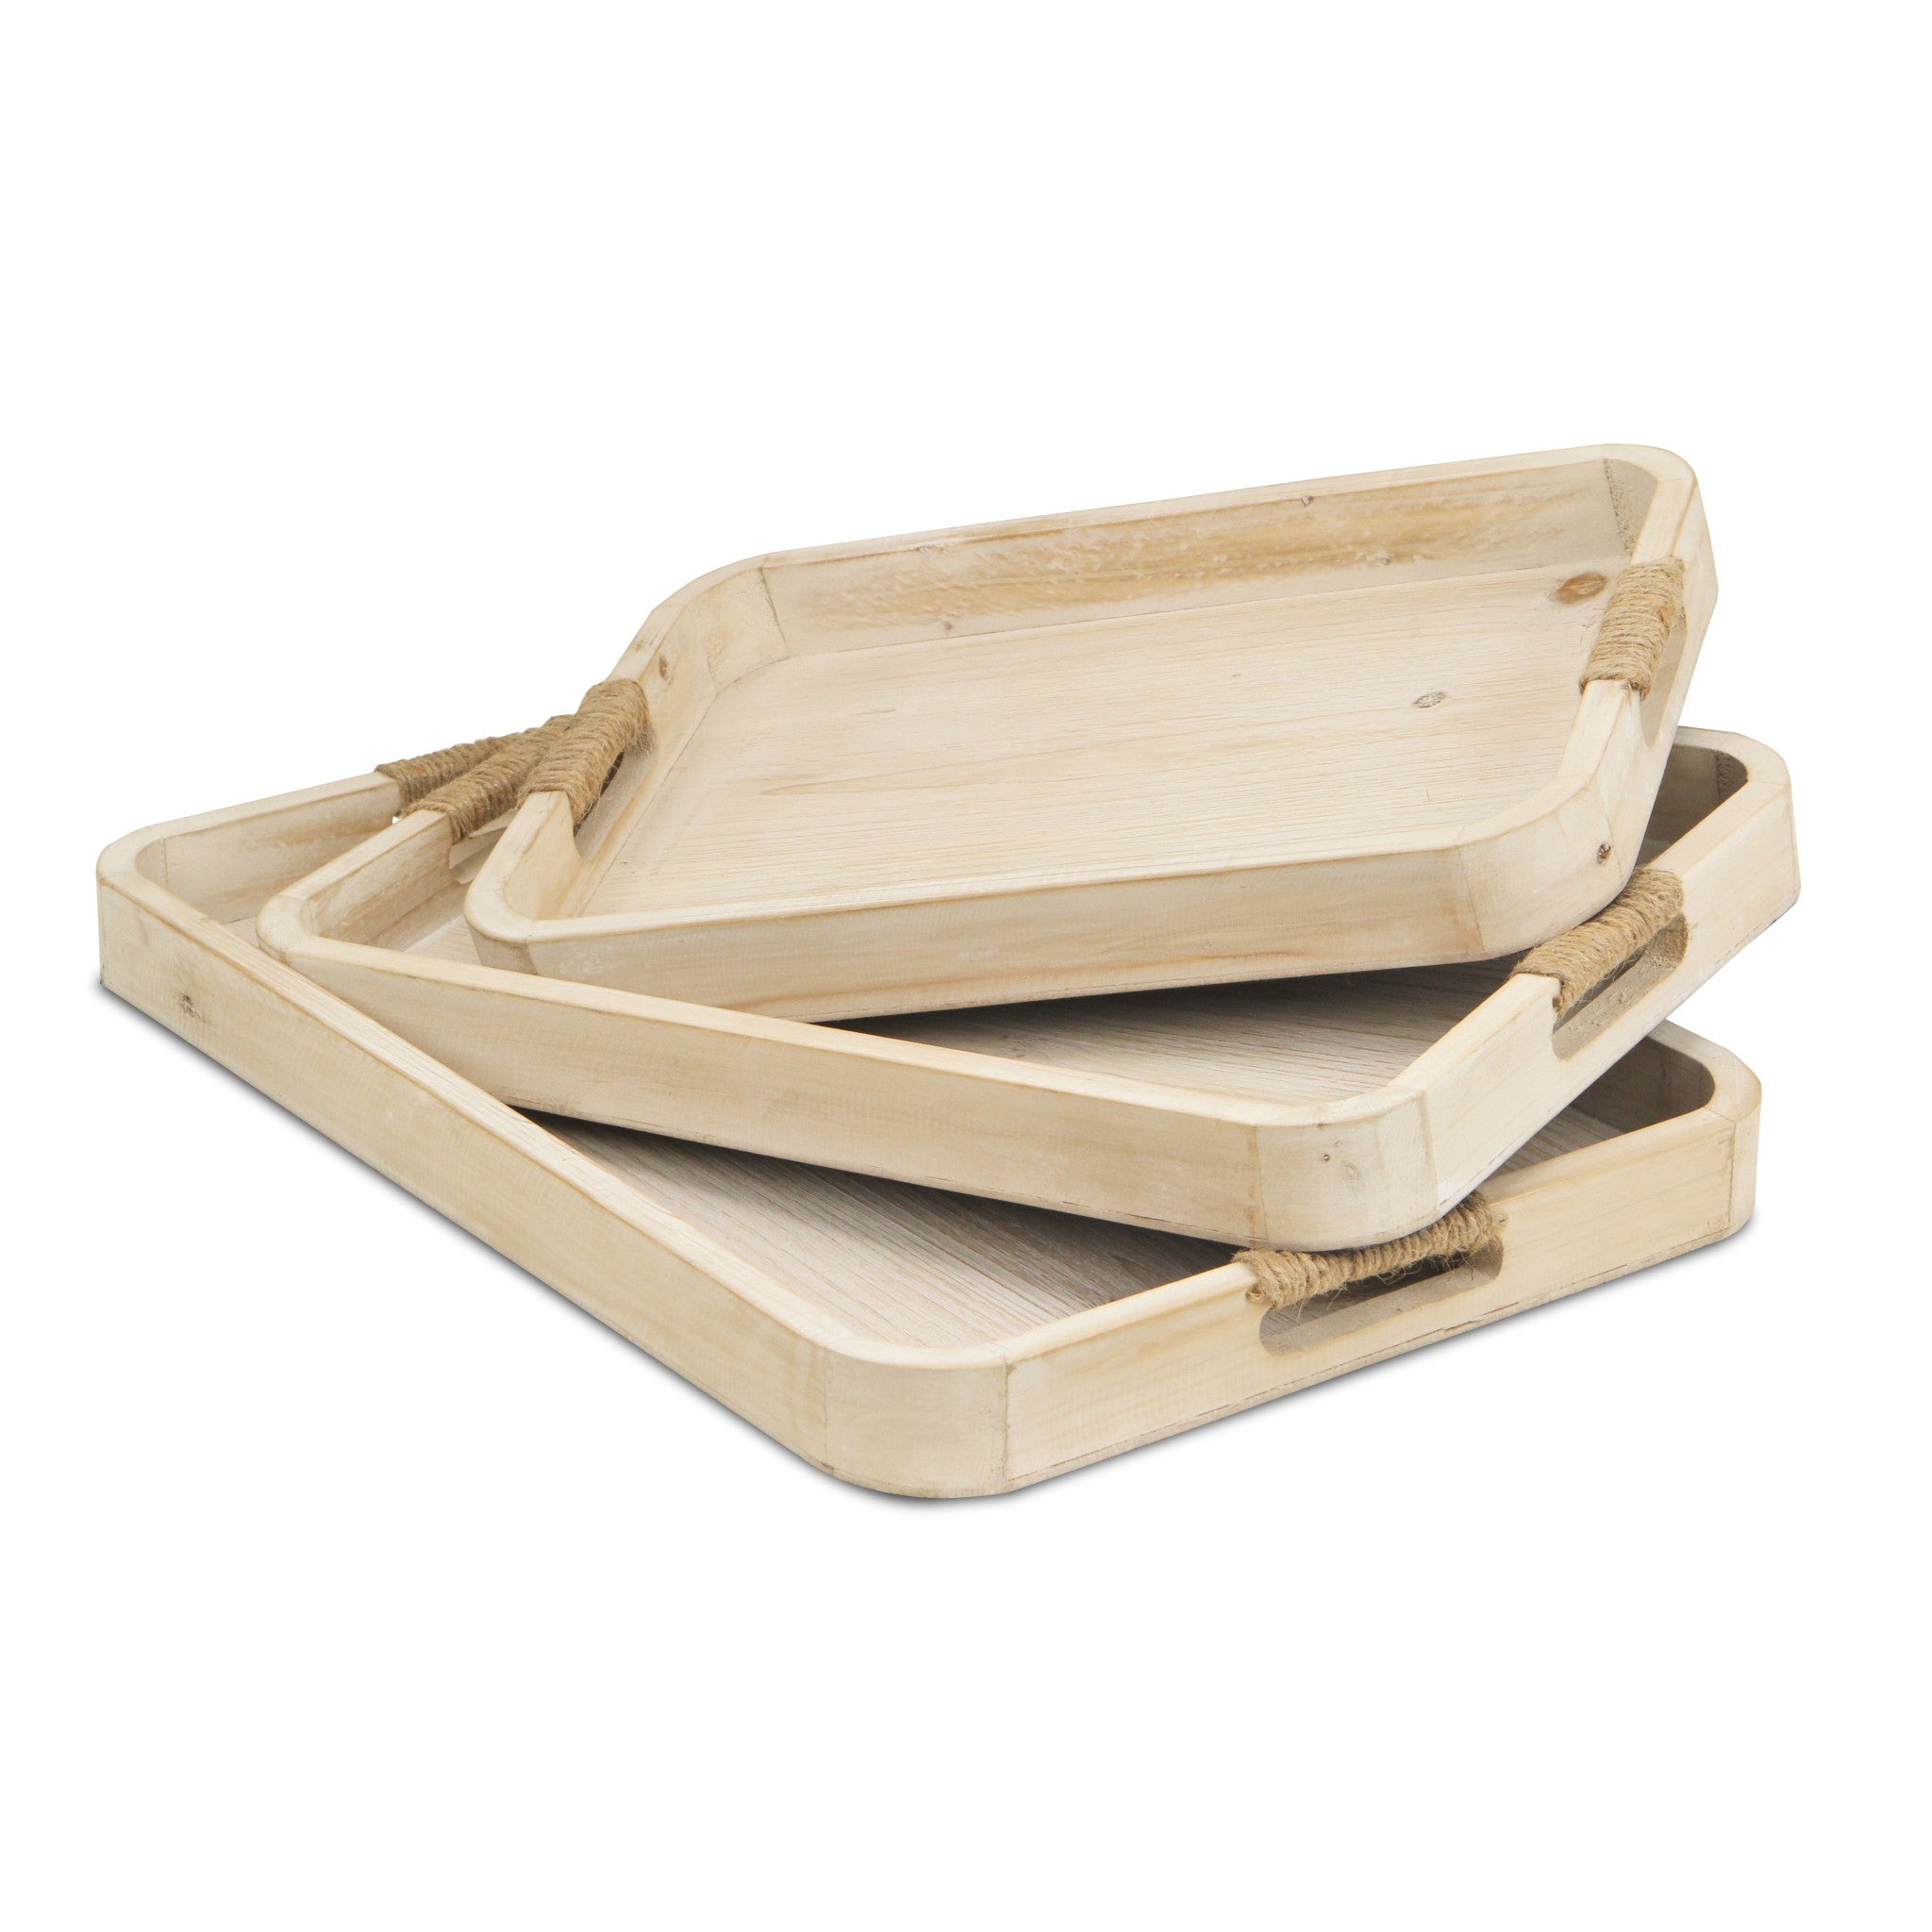 Set Of Three 20" White Rectangular Wood Handmade Tray With Handles